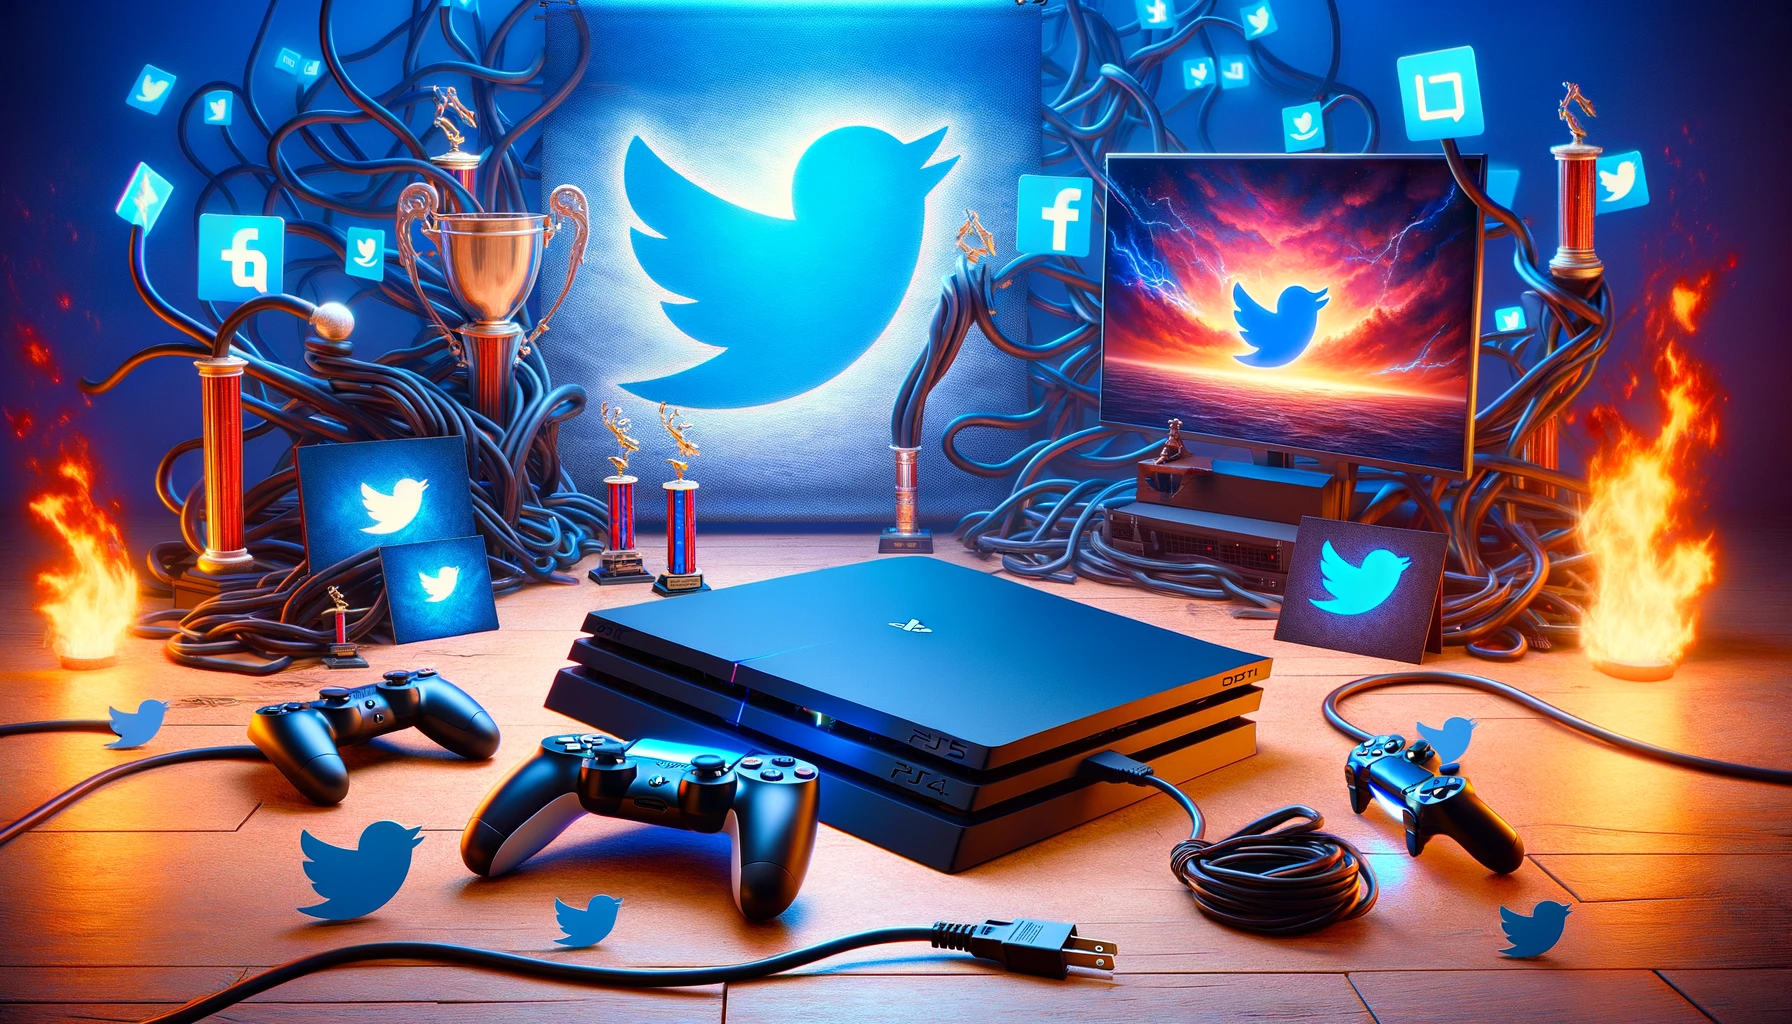 PlayStationin Twitter-integraatio Päättyy, Keskittyminen Pelikokemukseen